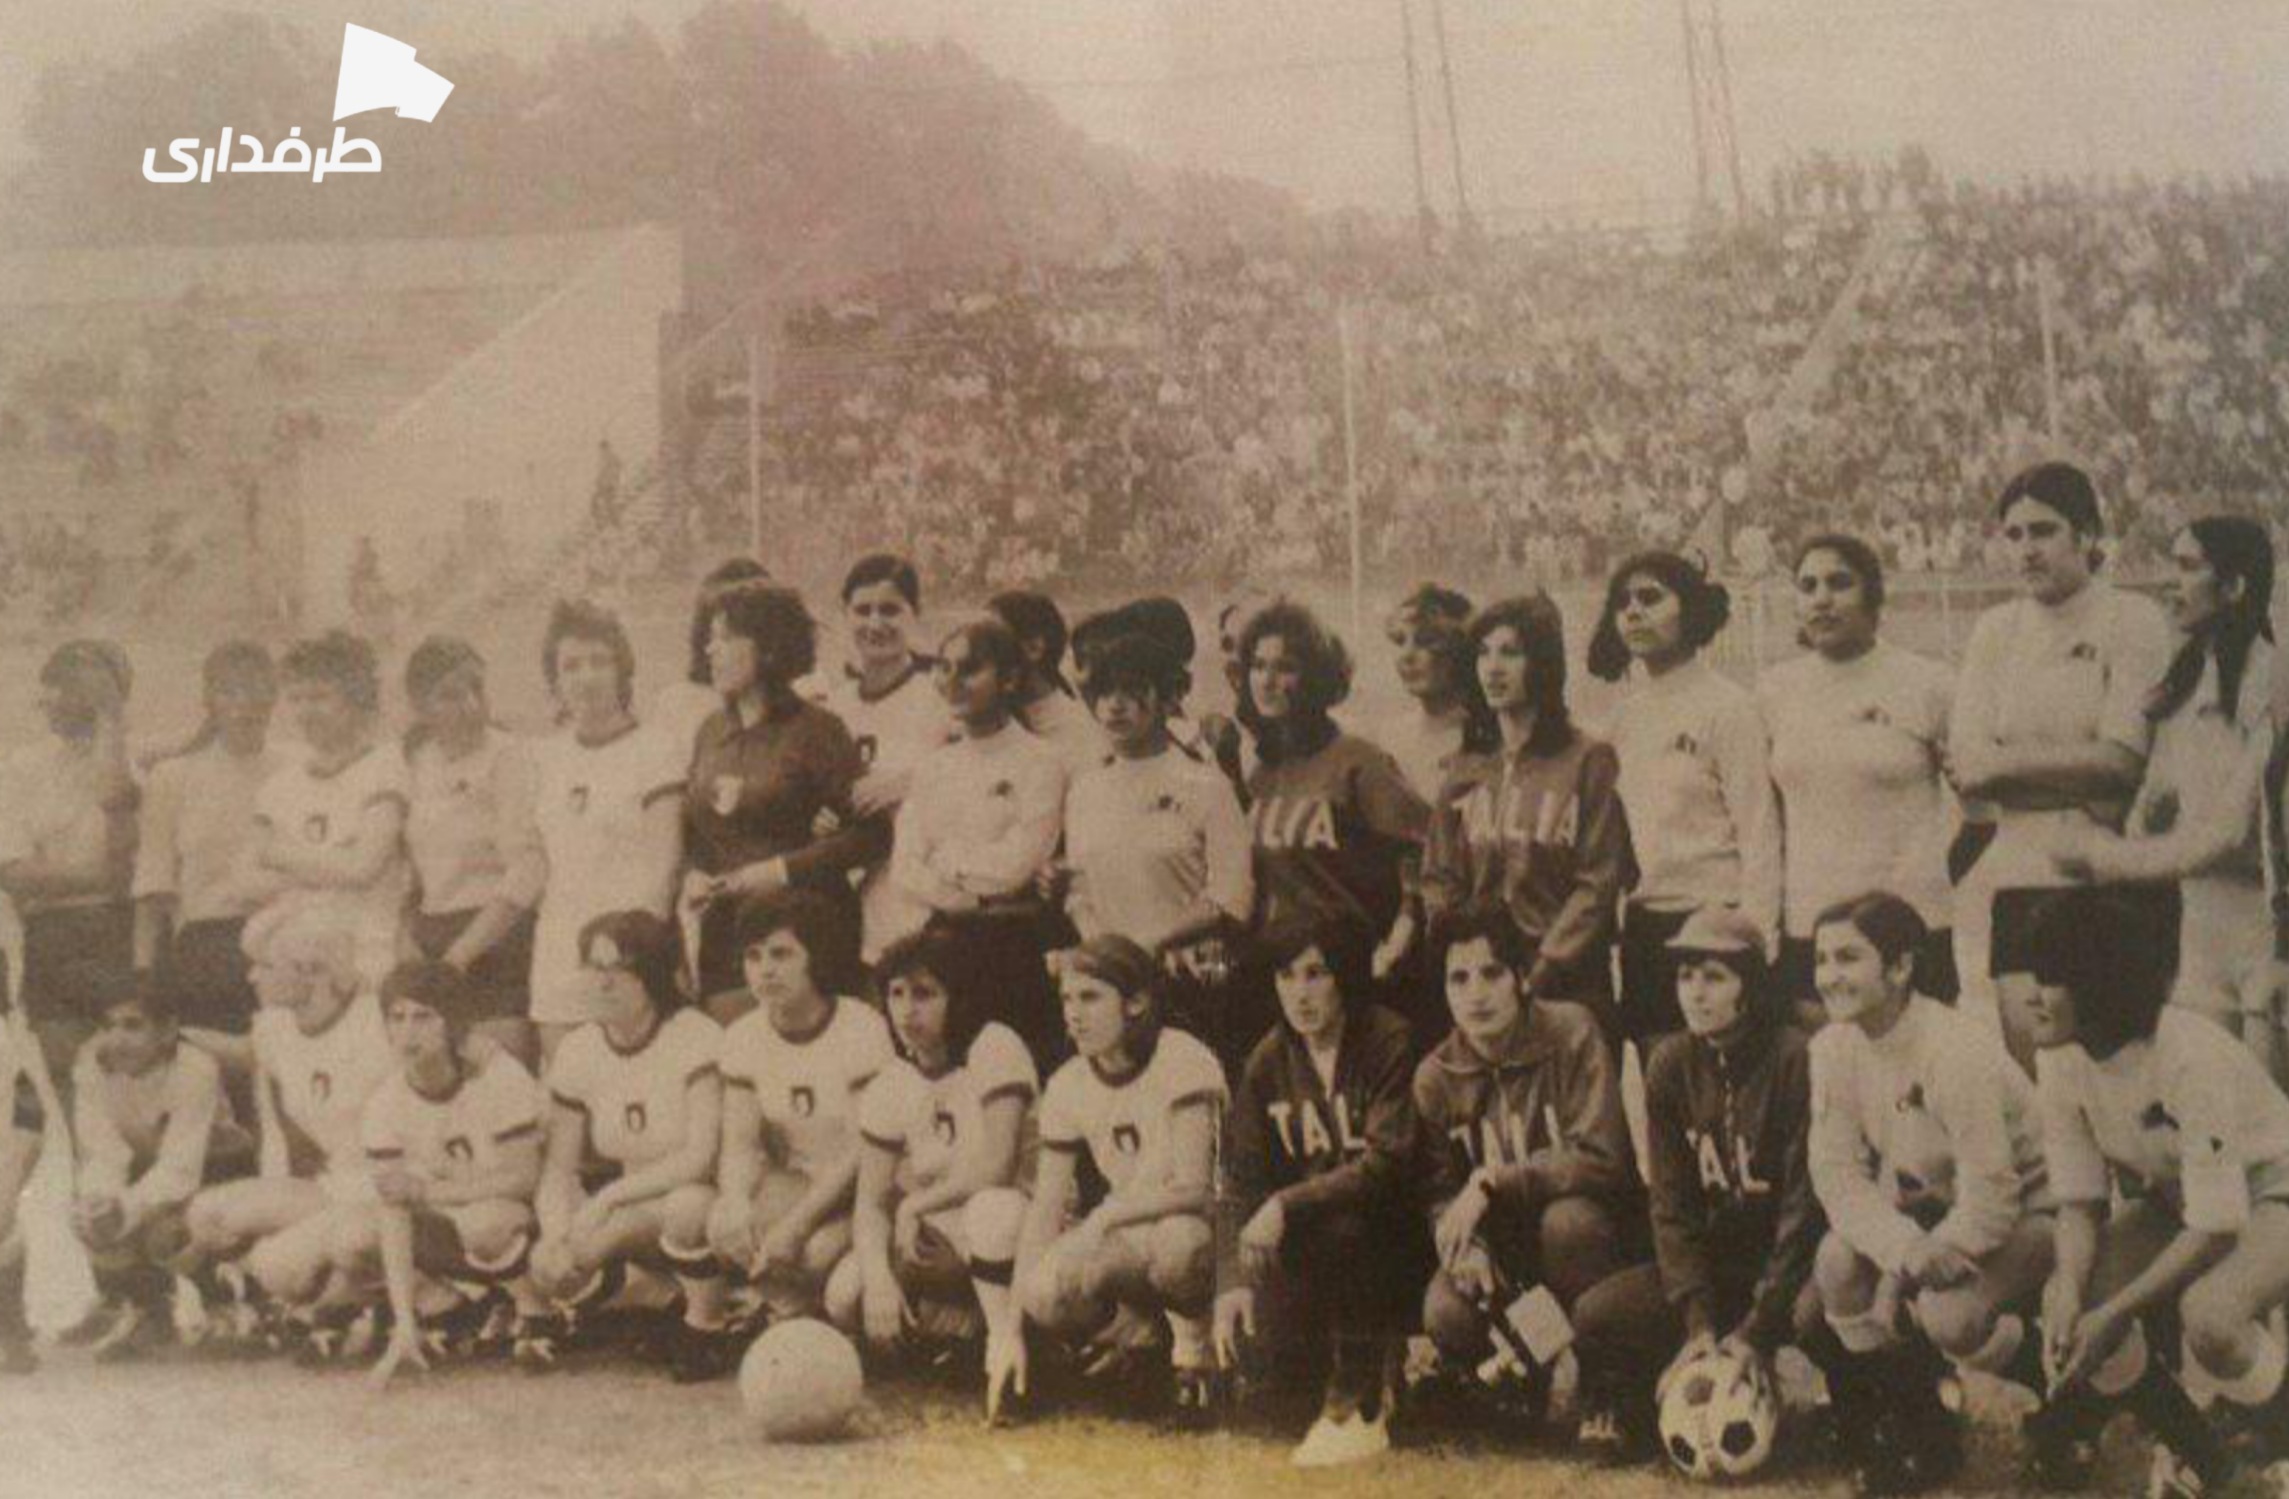 Taj women club vs Italian women football team